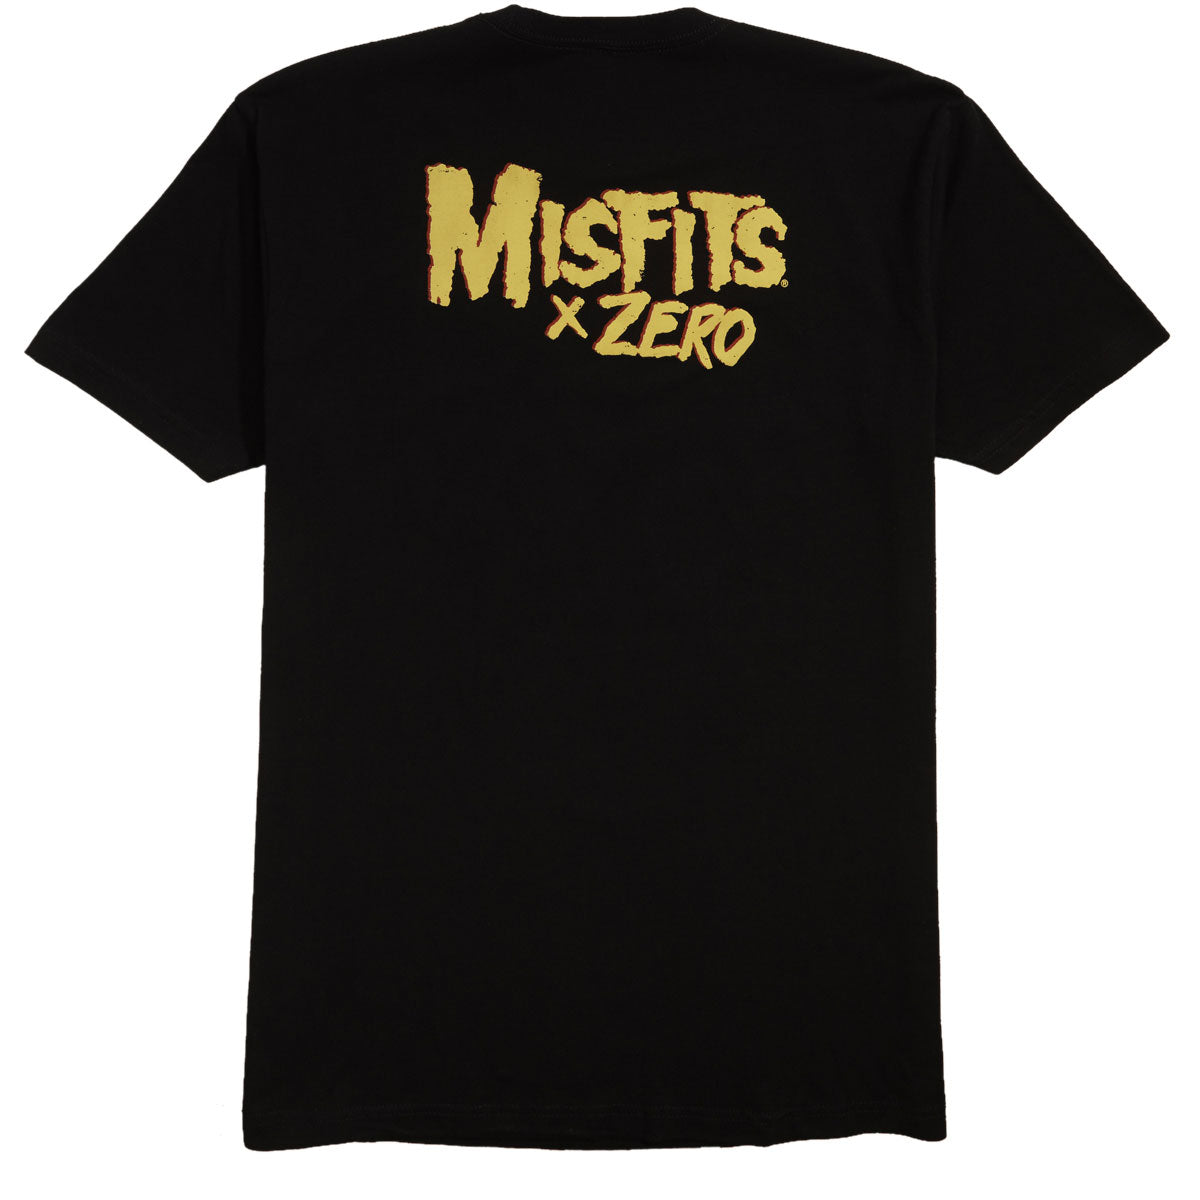 Zero x Misfits Fiend Skull T-Shirt - Black image 2